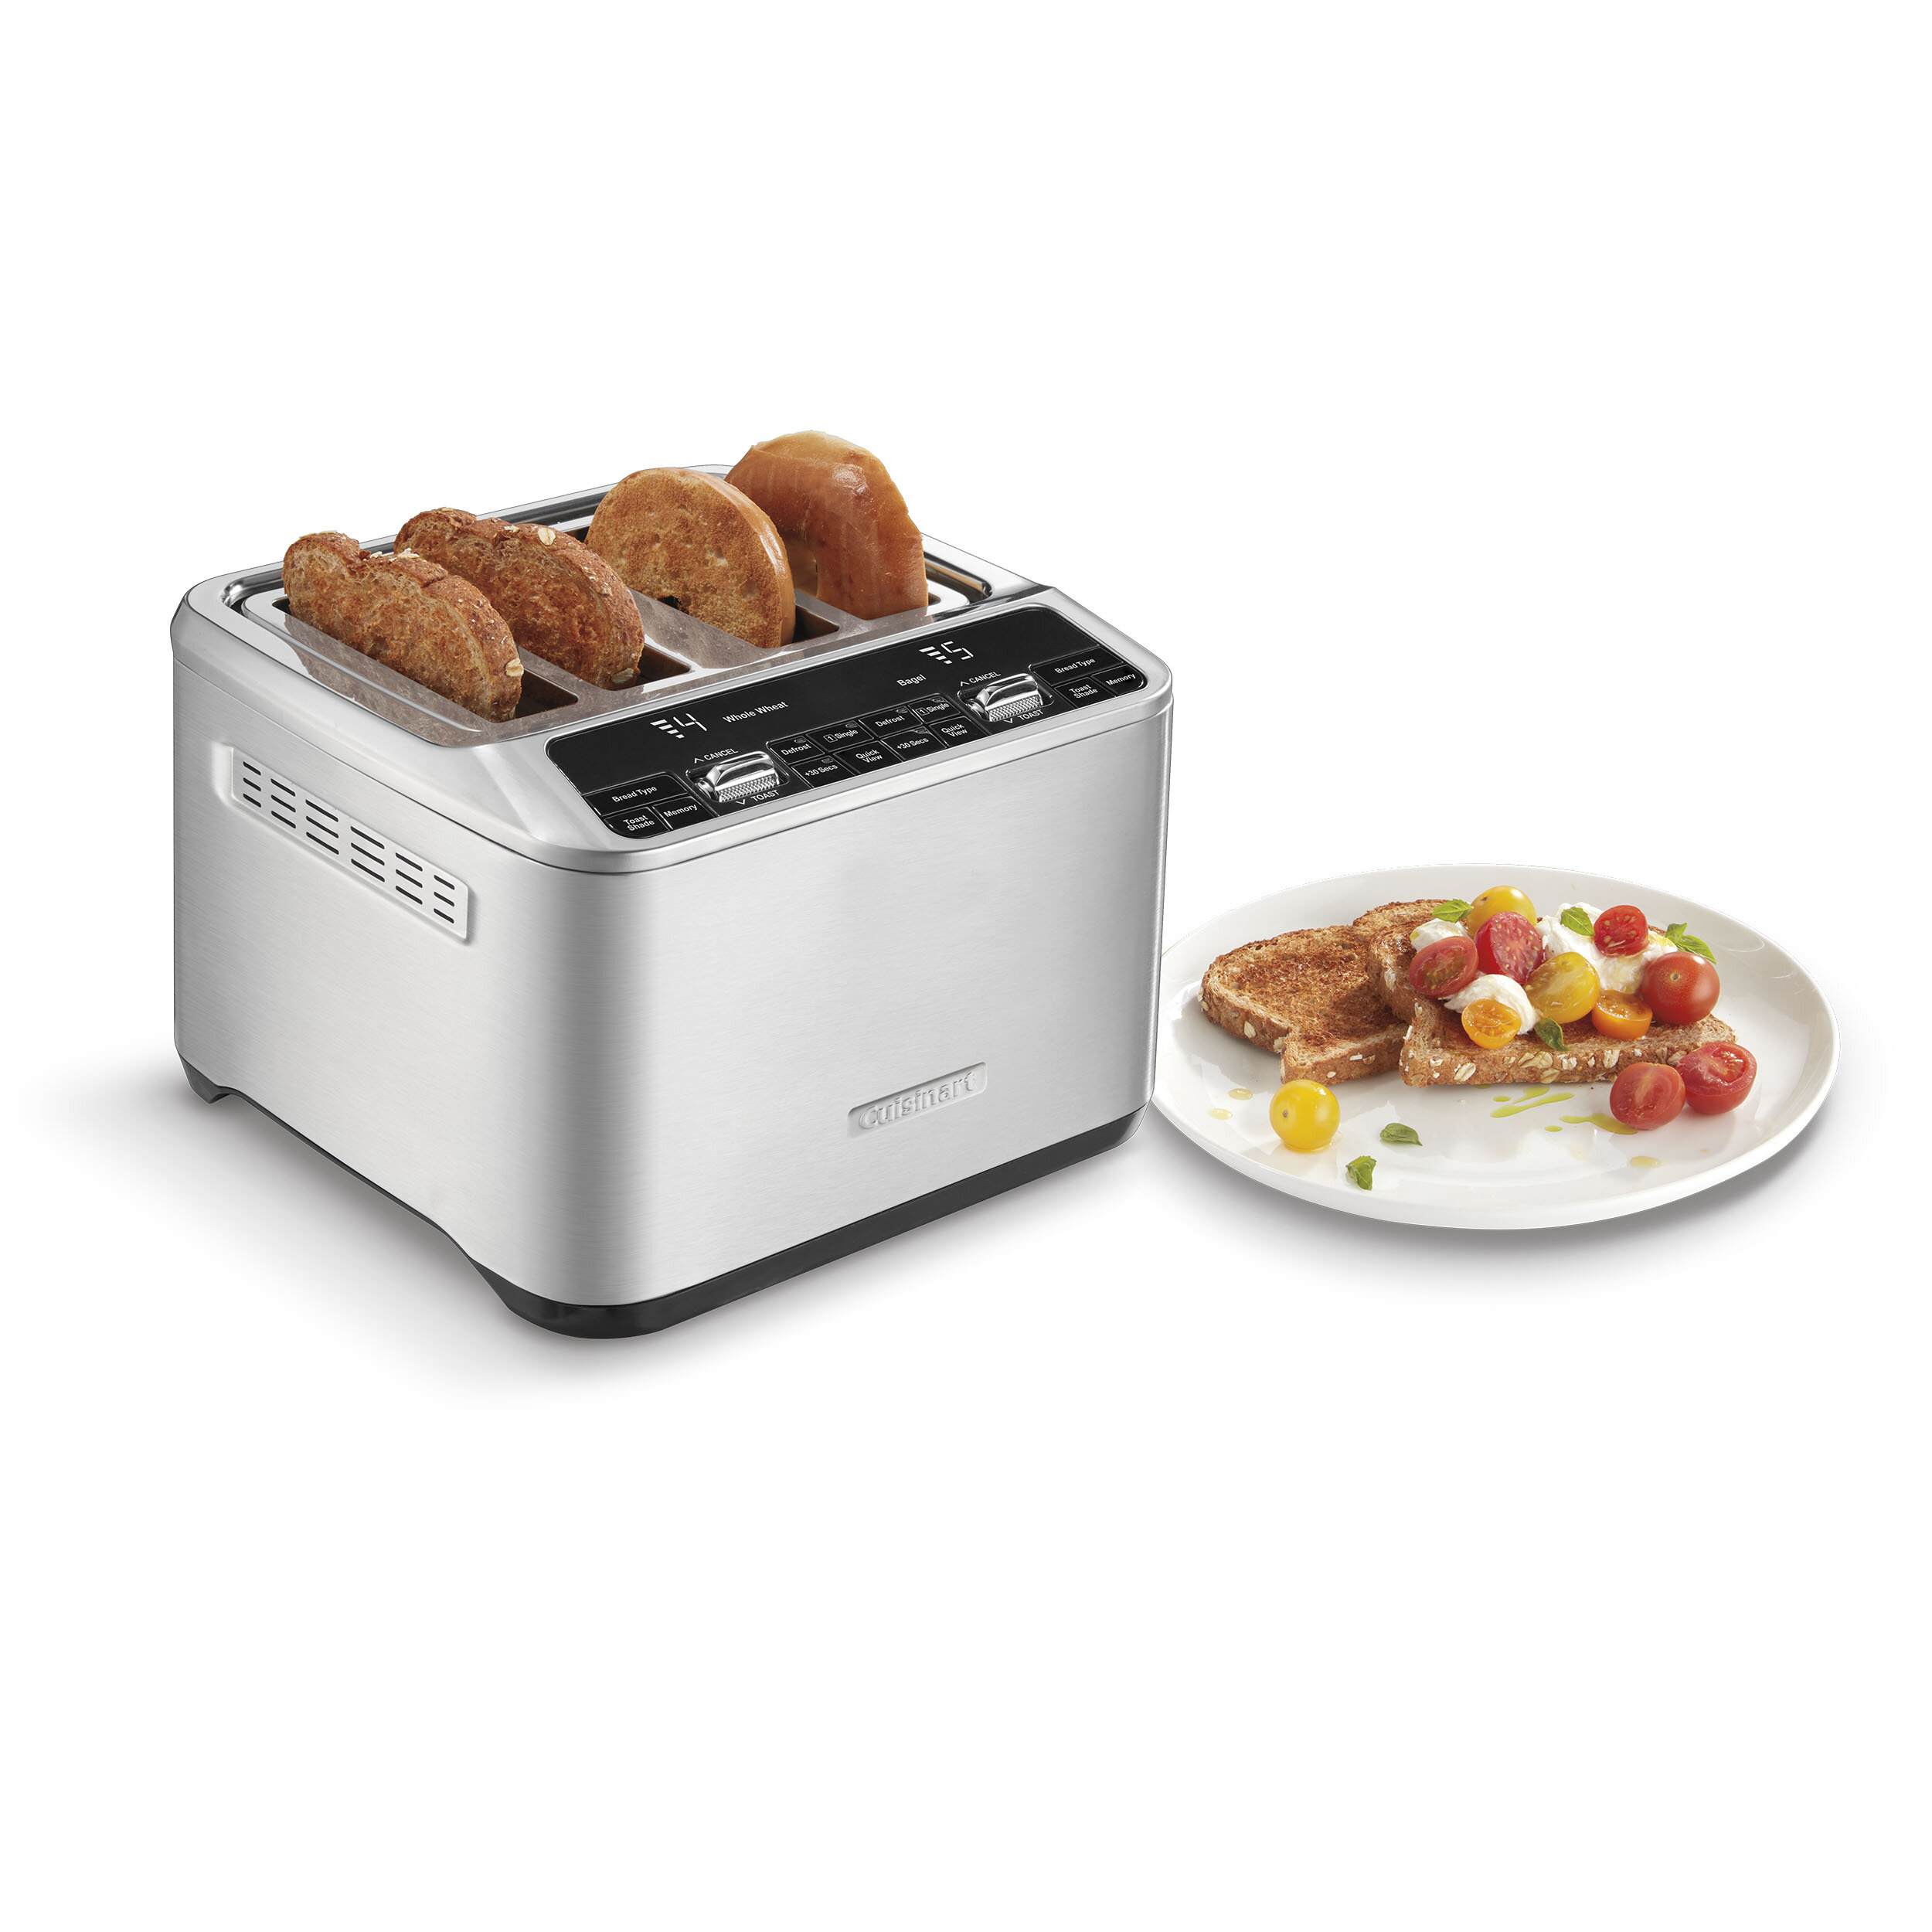 https://assets.wfcdn.com/im/63606833/compr-r85/1789/178921797/4-slice-motorized-toaster.jpg